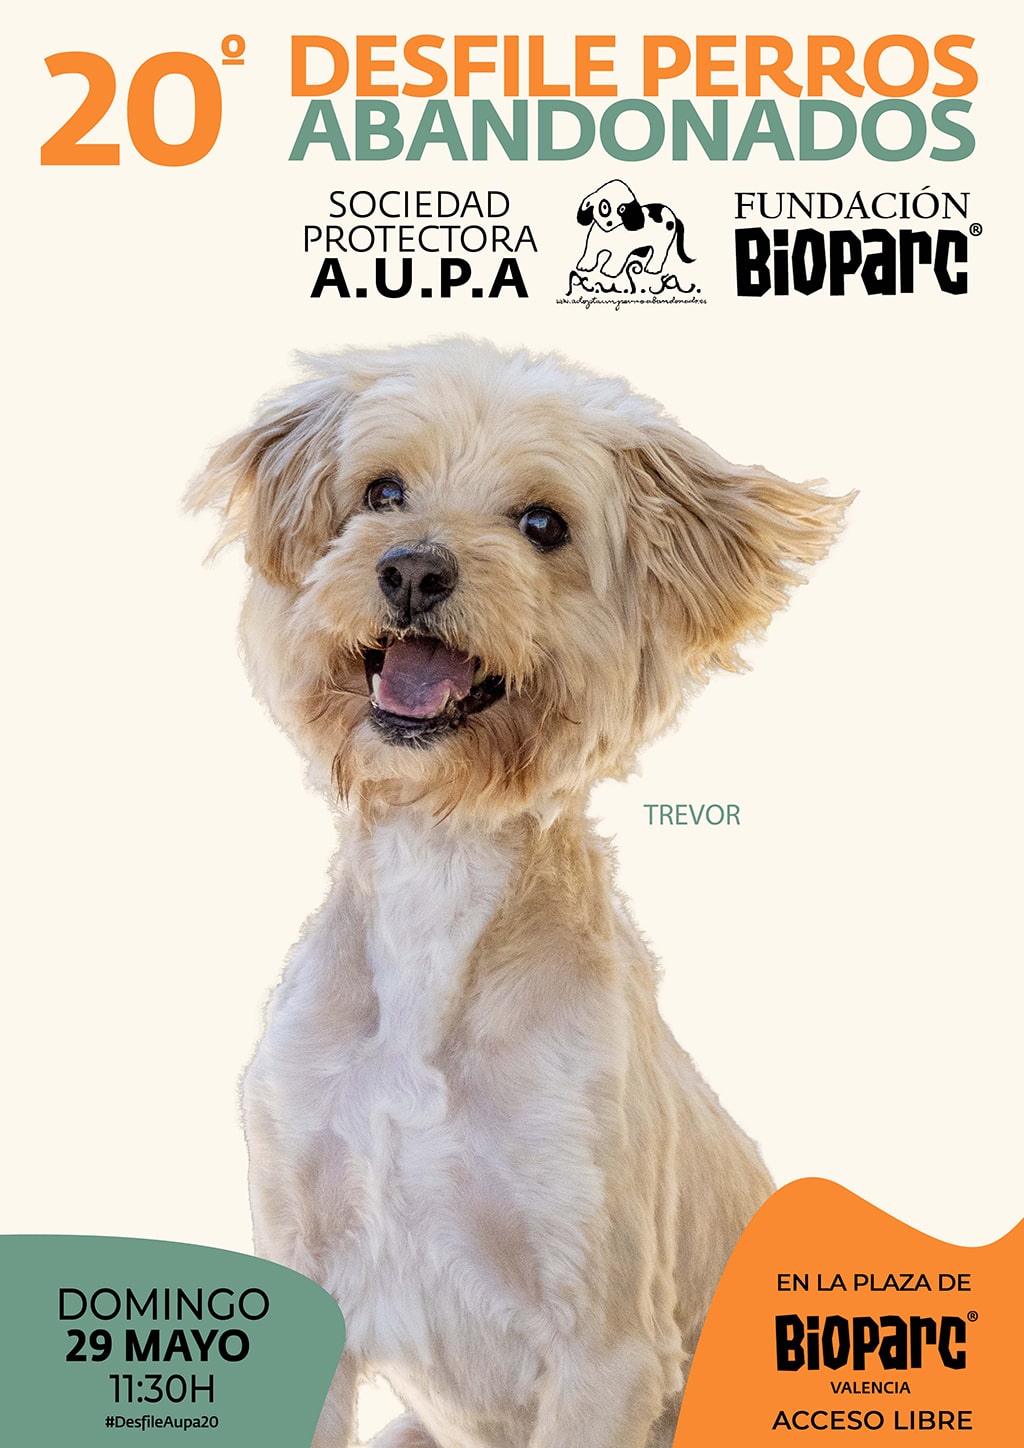 20 desfile solidario de perros abandonados organizado por AUPA y BIOPARC